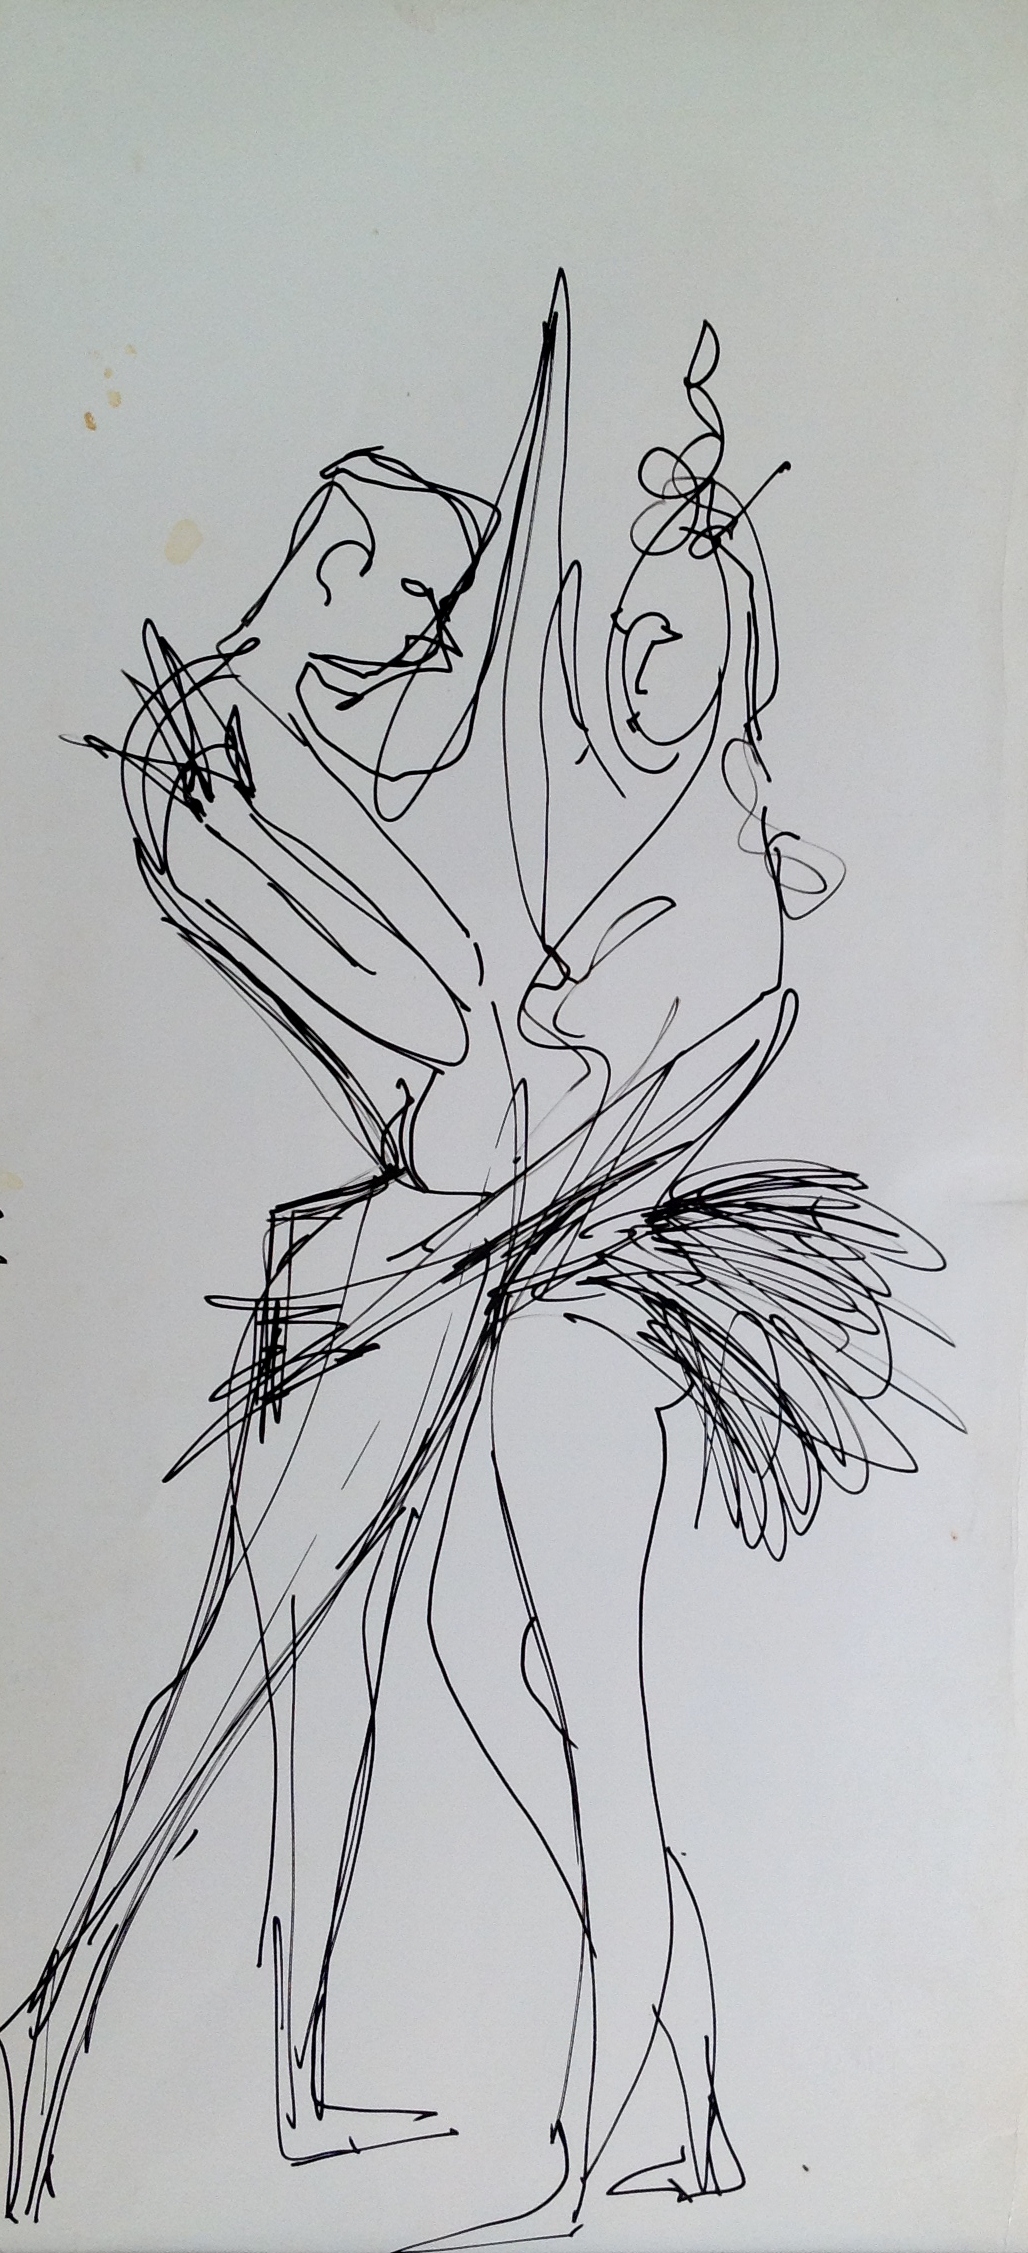 Danzando disegno di due ballerini, uomo e donna che danzano di Gigi Busato. Disegno a penna su carta, collezione di famiglia